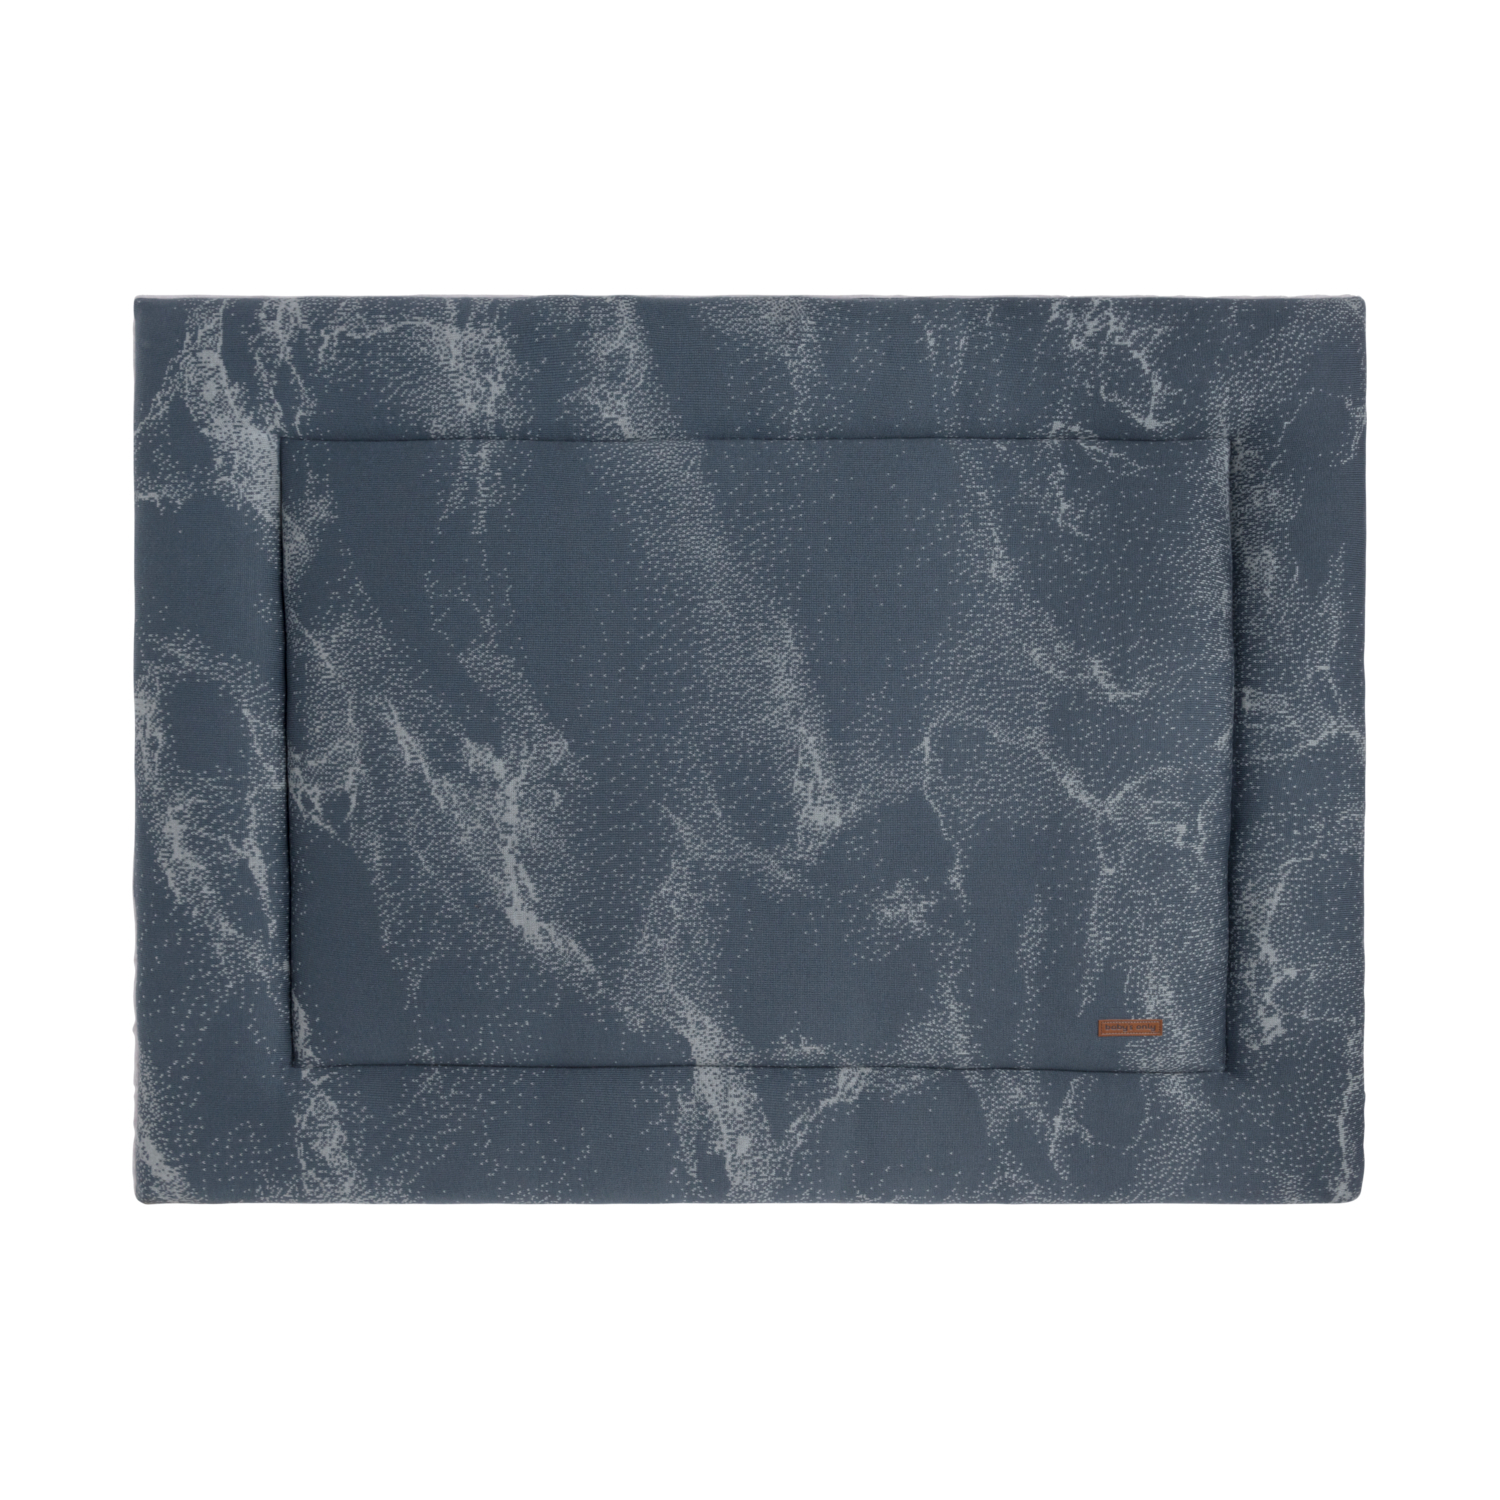 Baby's Only Marble Boxkleed Granit / Grijs 75 x 95 cm blauw, grijs